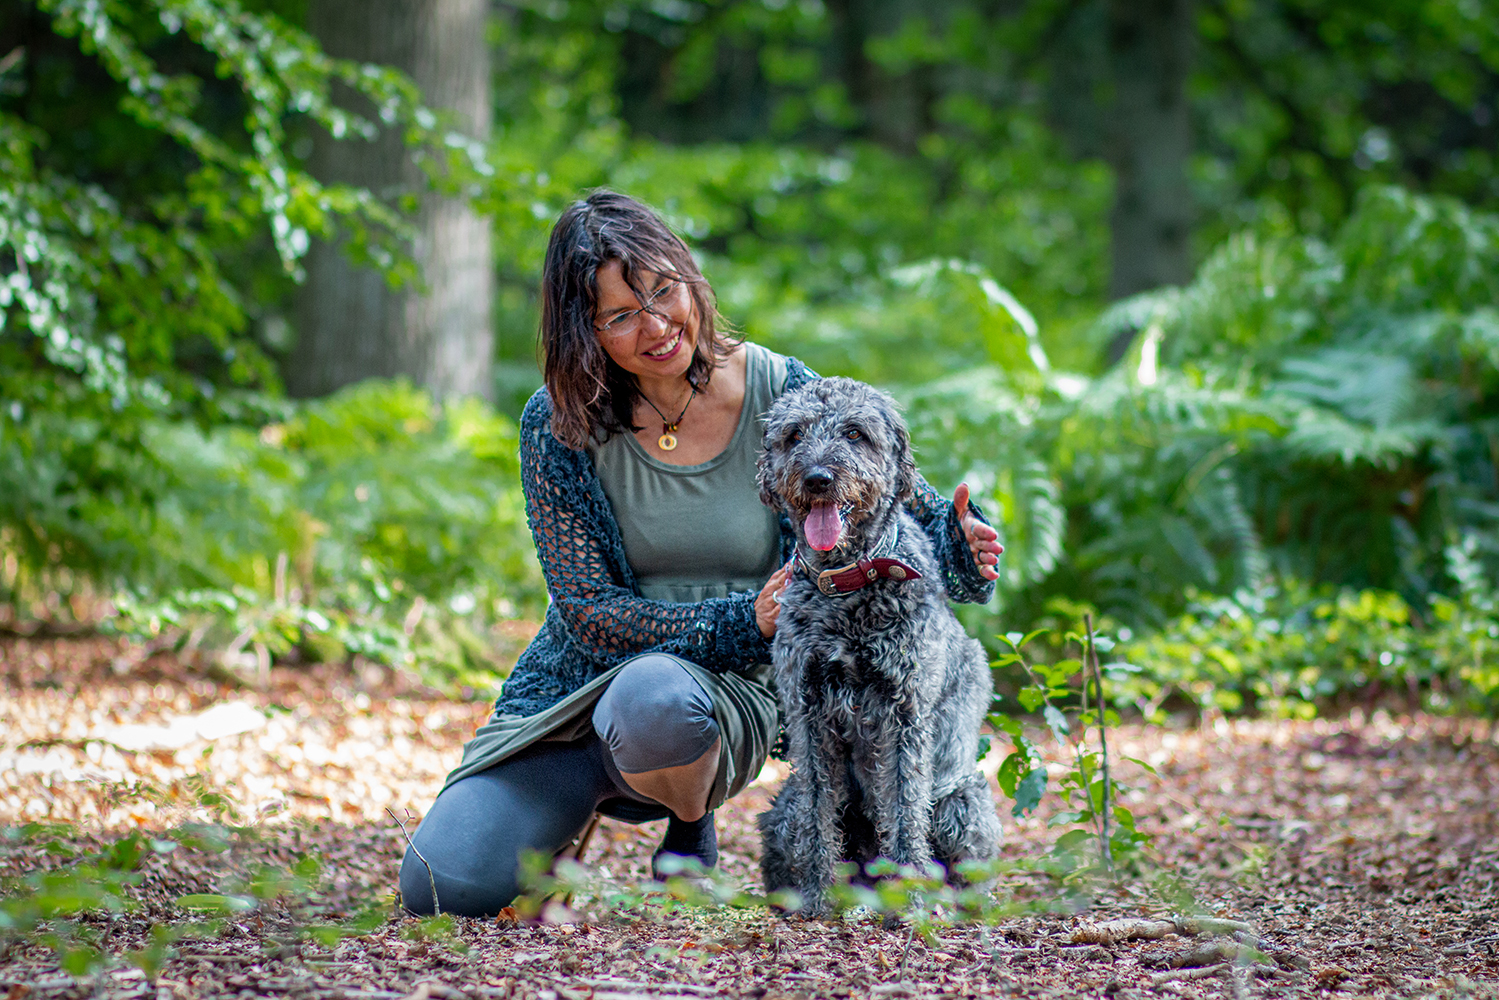 Frau mit Arme um einen sitzenden Hund im Wald